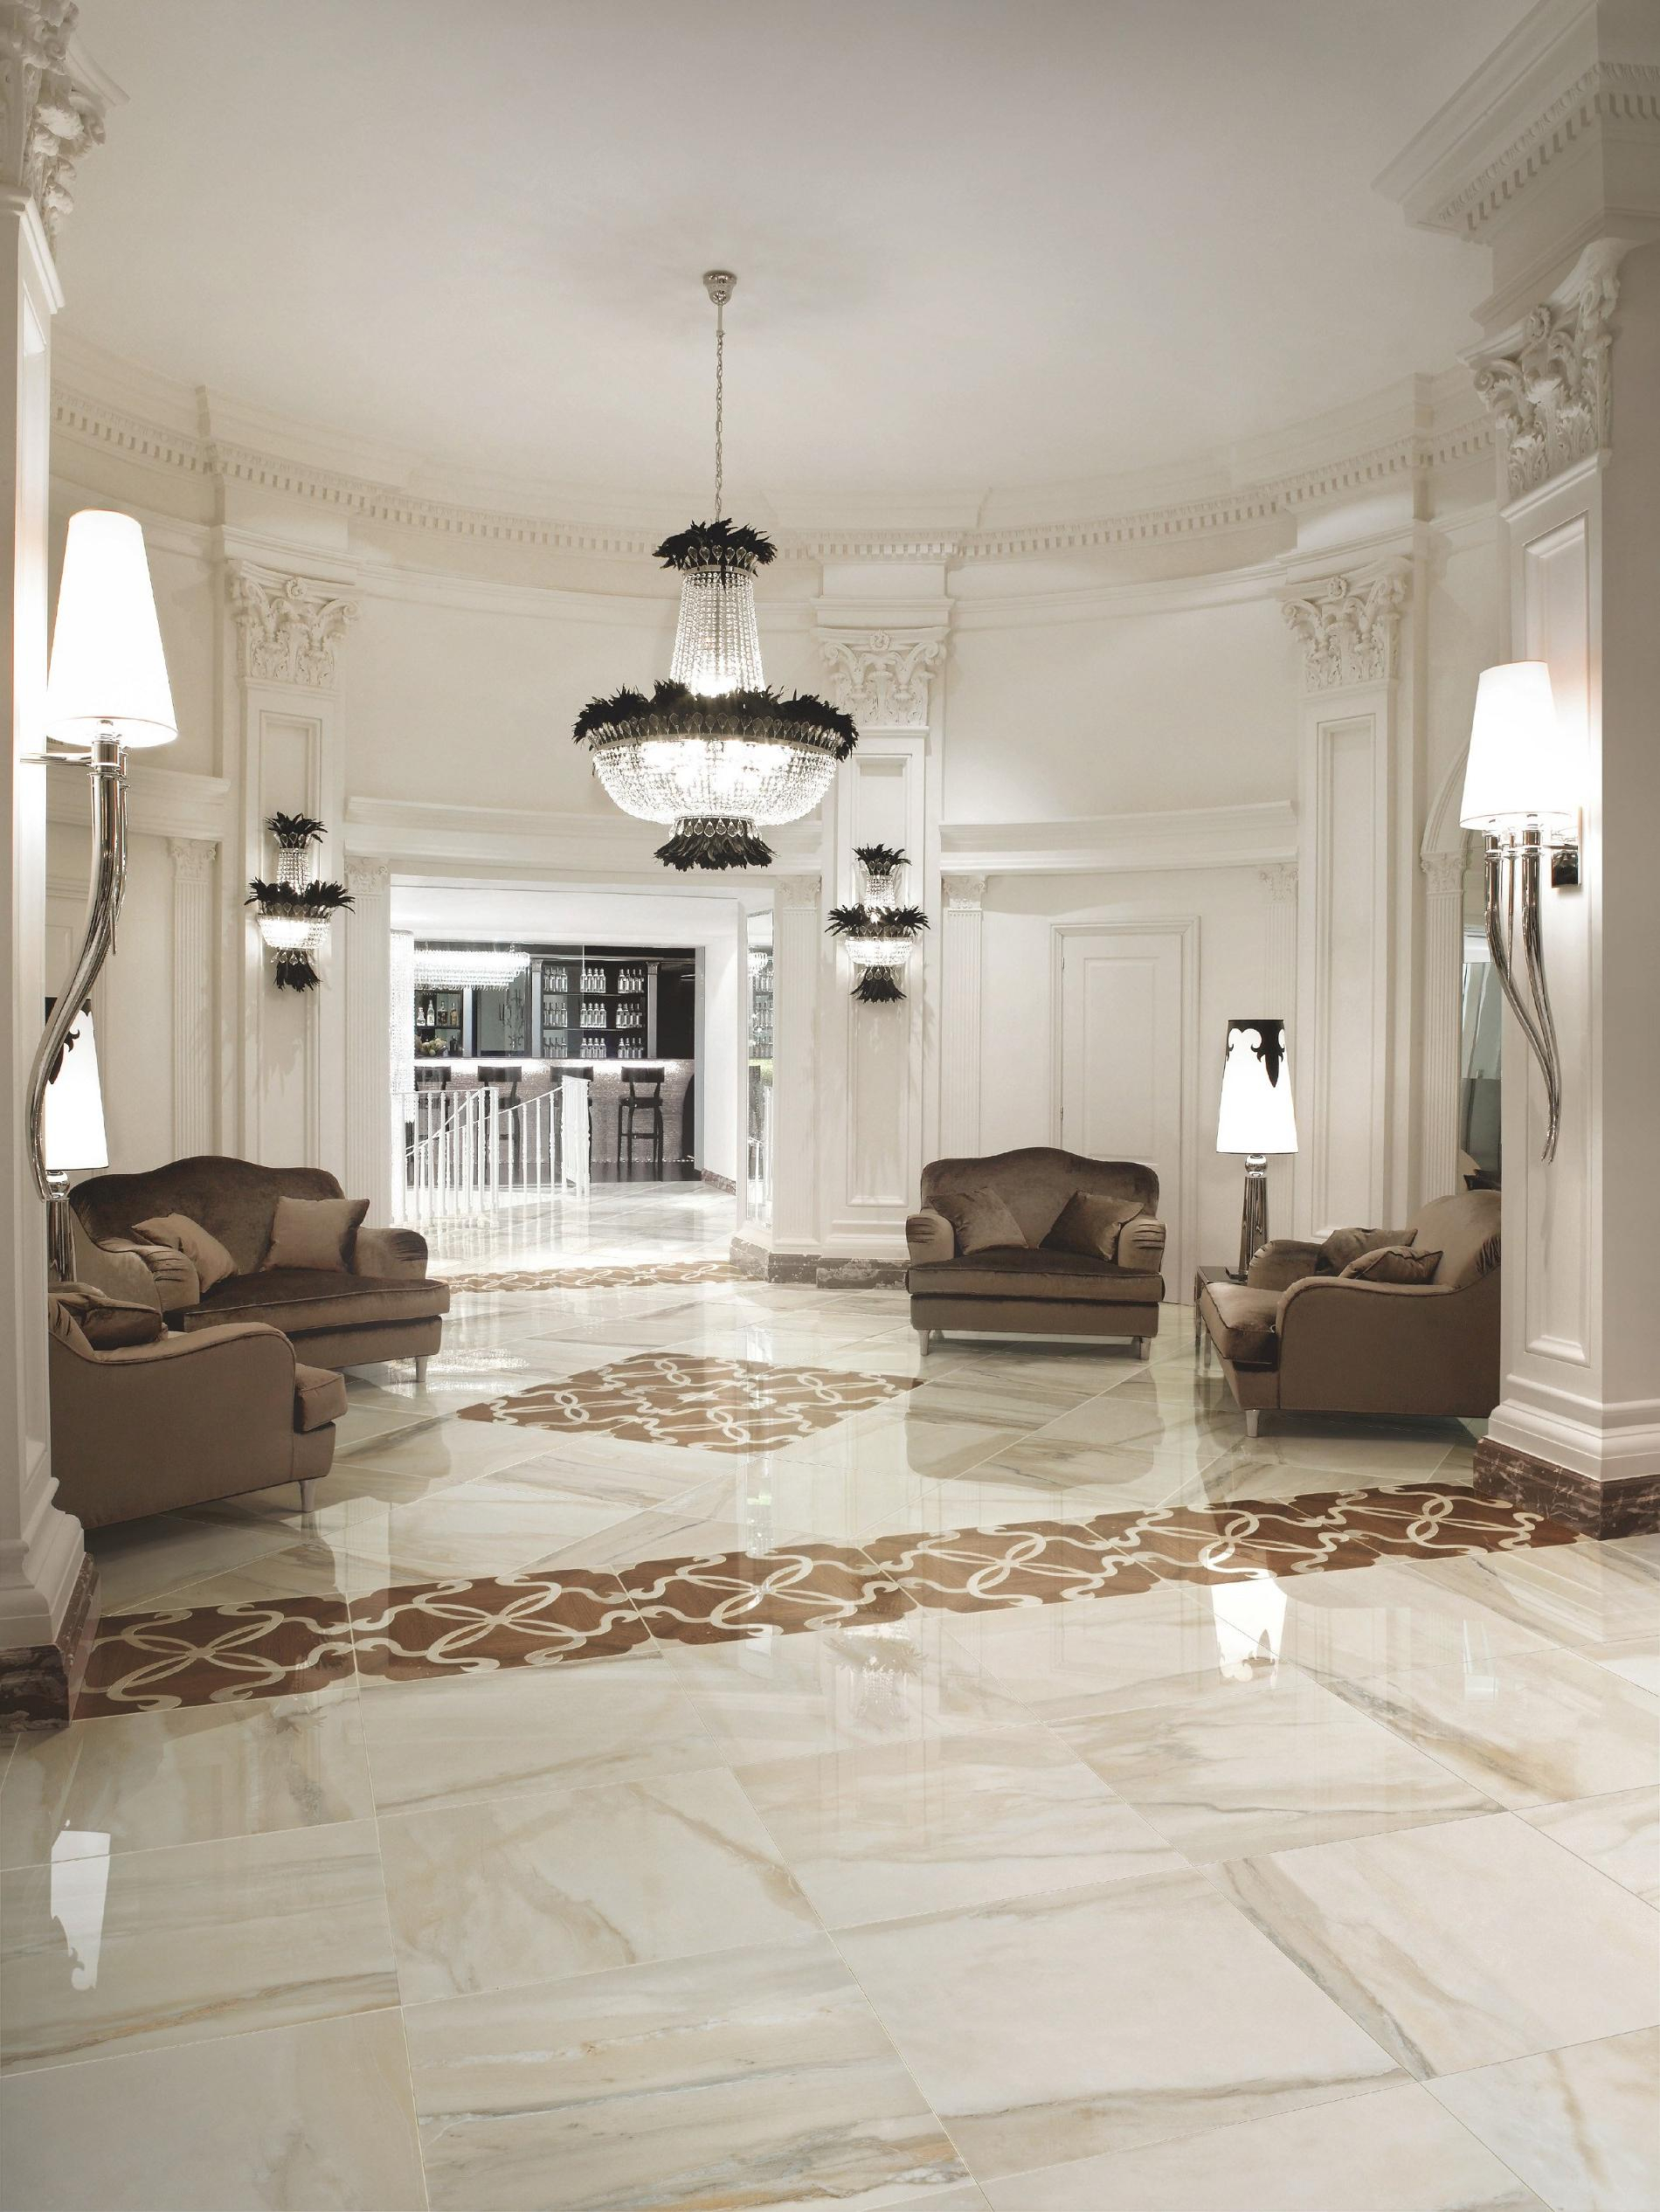 10 Fantastic Tile Floor Ideas For Living Room floor tile floor ideas for living room 2024